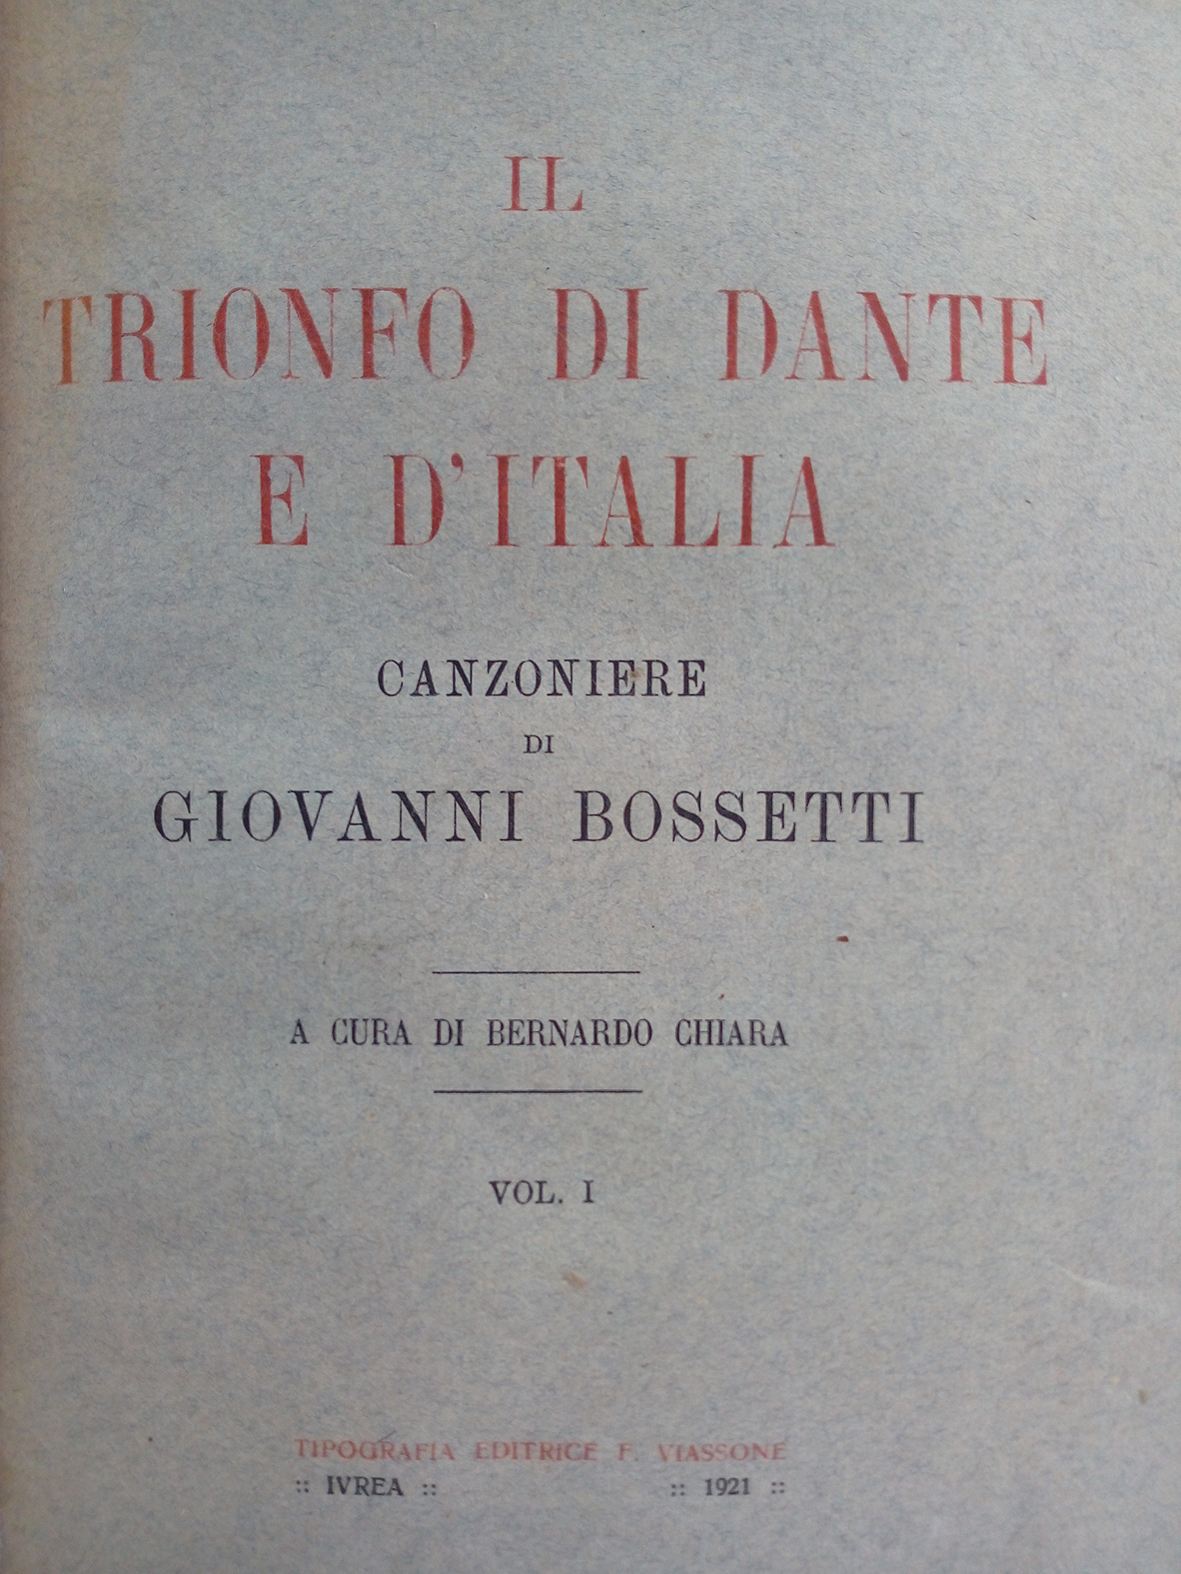 Giovanni Bossetti, il canavesano cantore di Dante